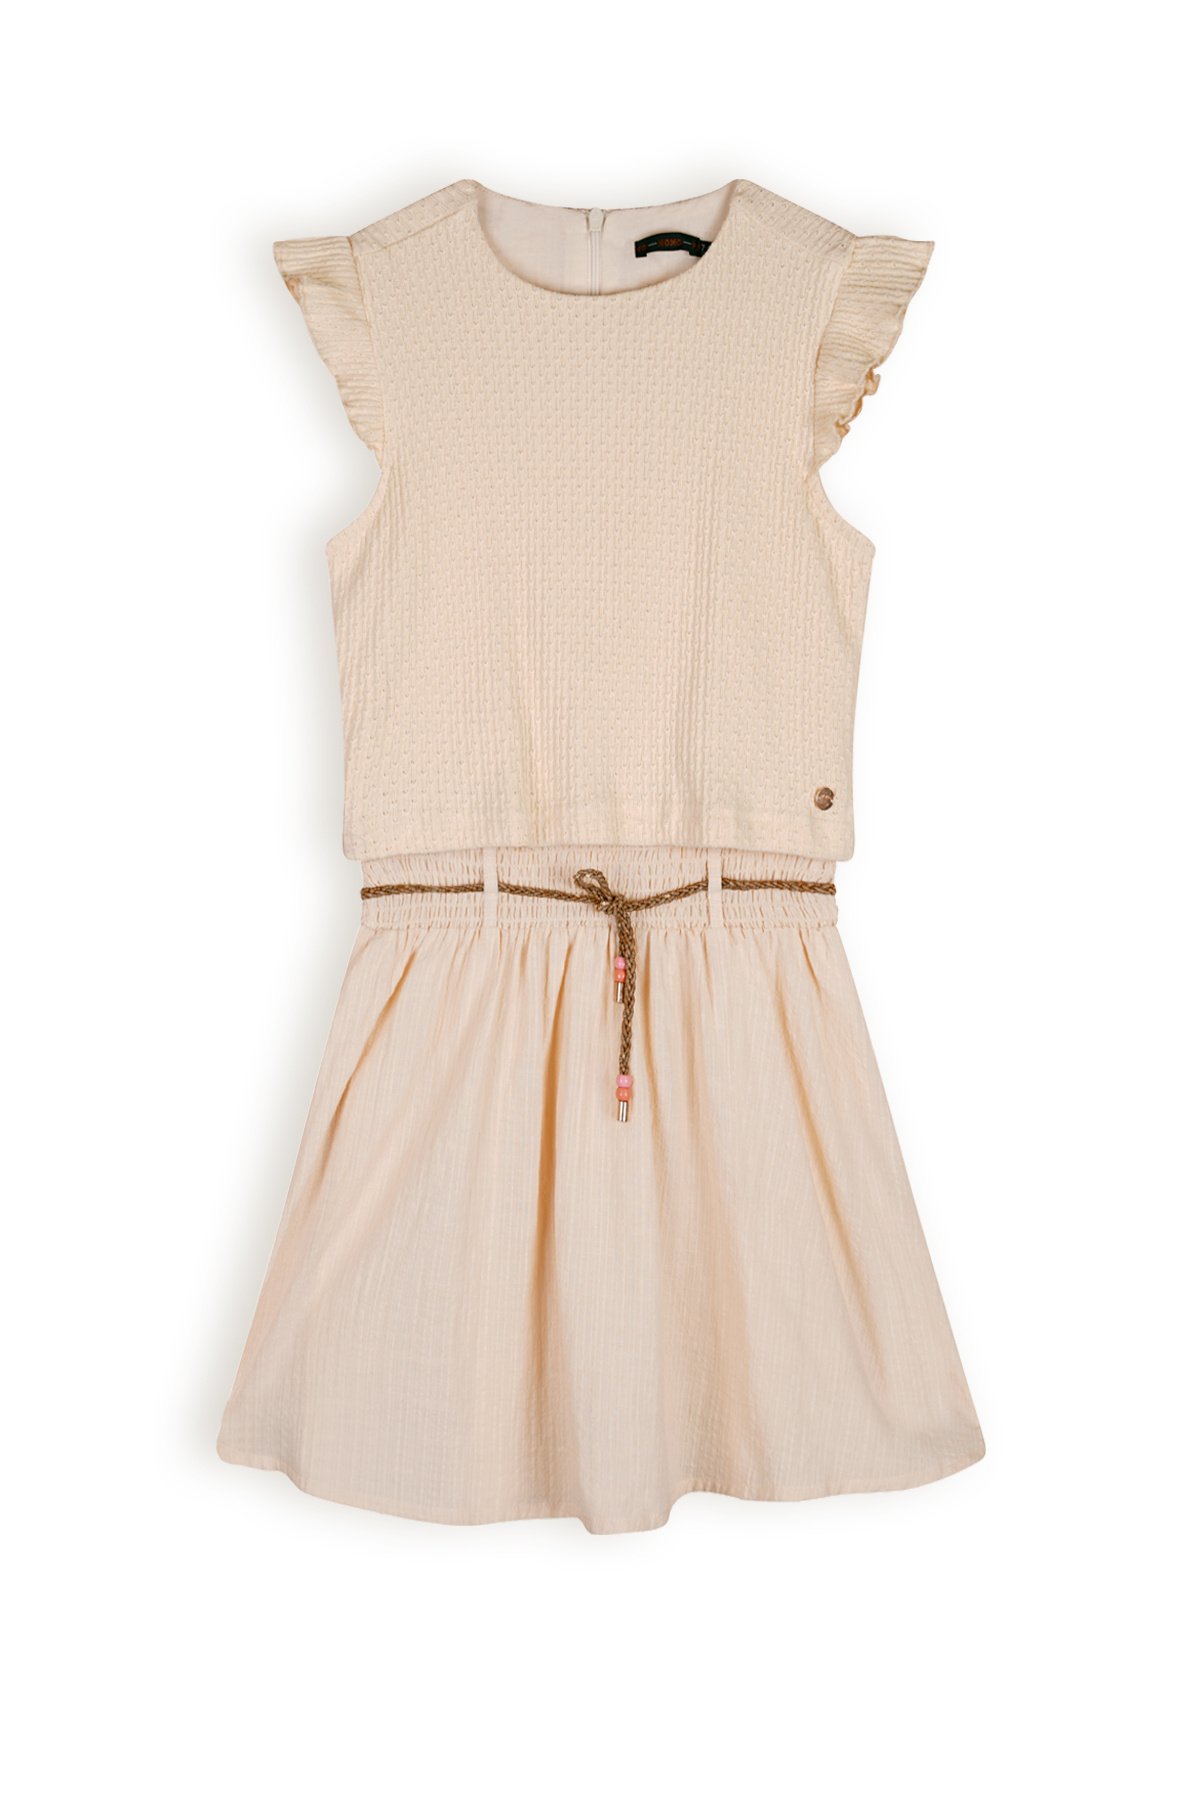 NoNo Meisjes jurk - Mayka - Pearled ivoor wit